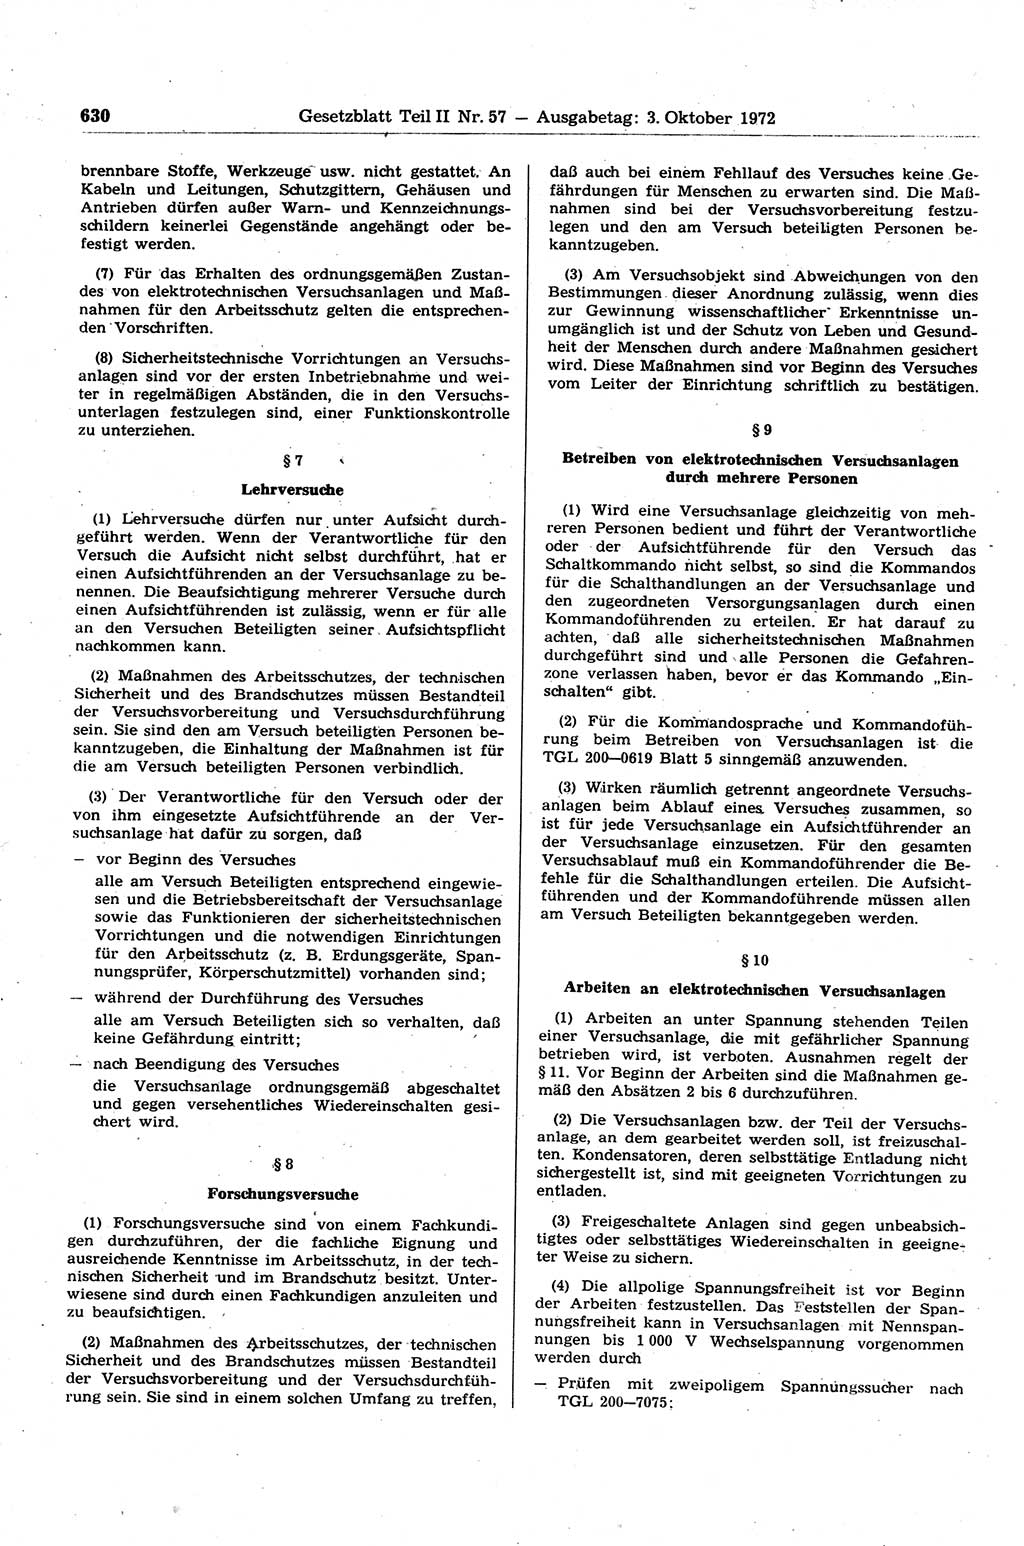 Gesetzblatt (GBl.) der Deutschen Demokratischen Republik (DDR) Teil ⅠⅠ 1972, Seite 630 (GBl. DDR ⅠⅠ 1972, S. 630)